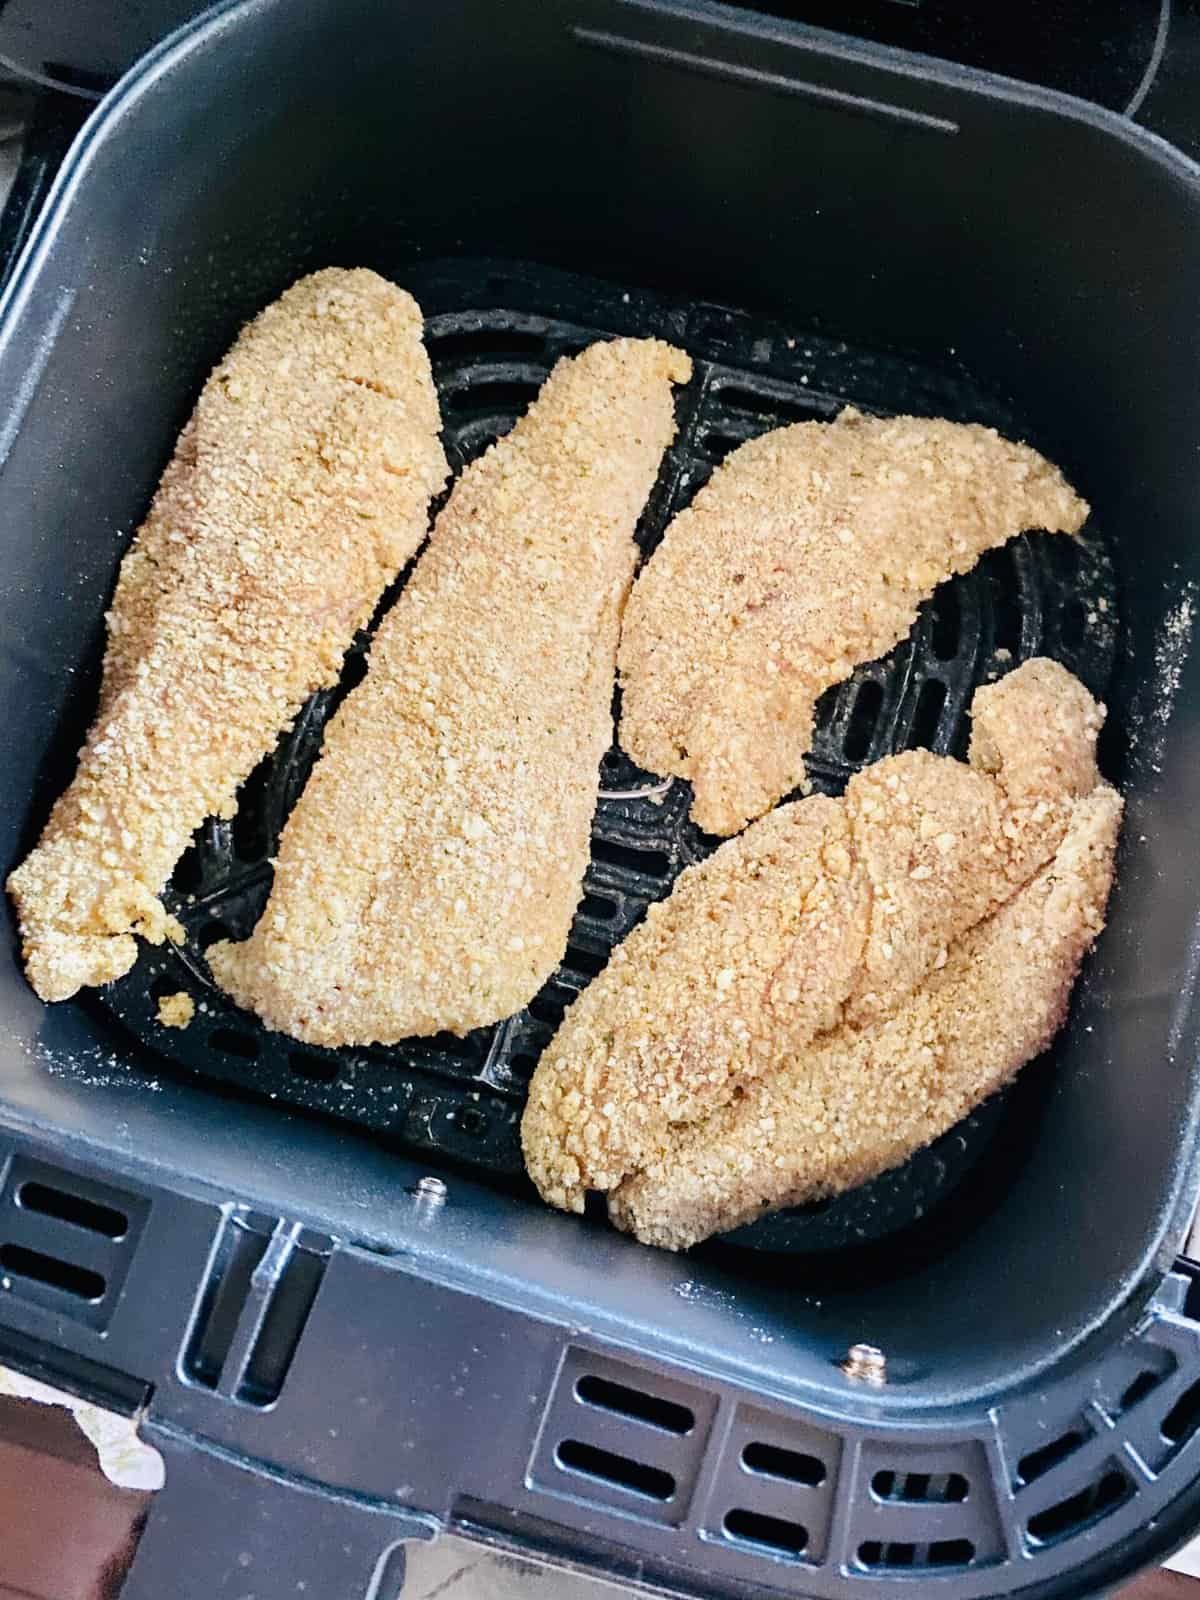 Breaded chicken cutlets in air fryer basket